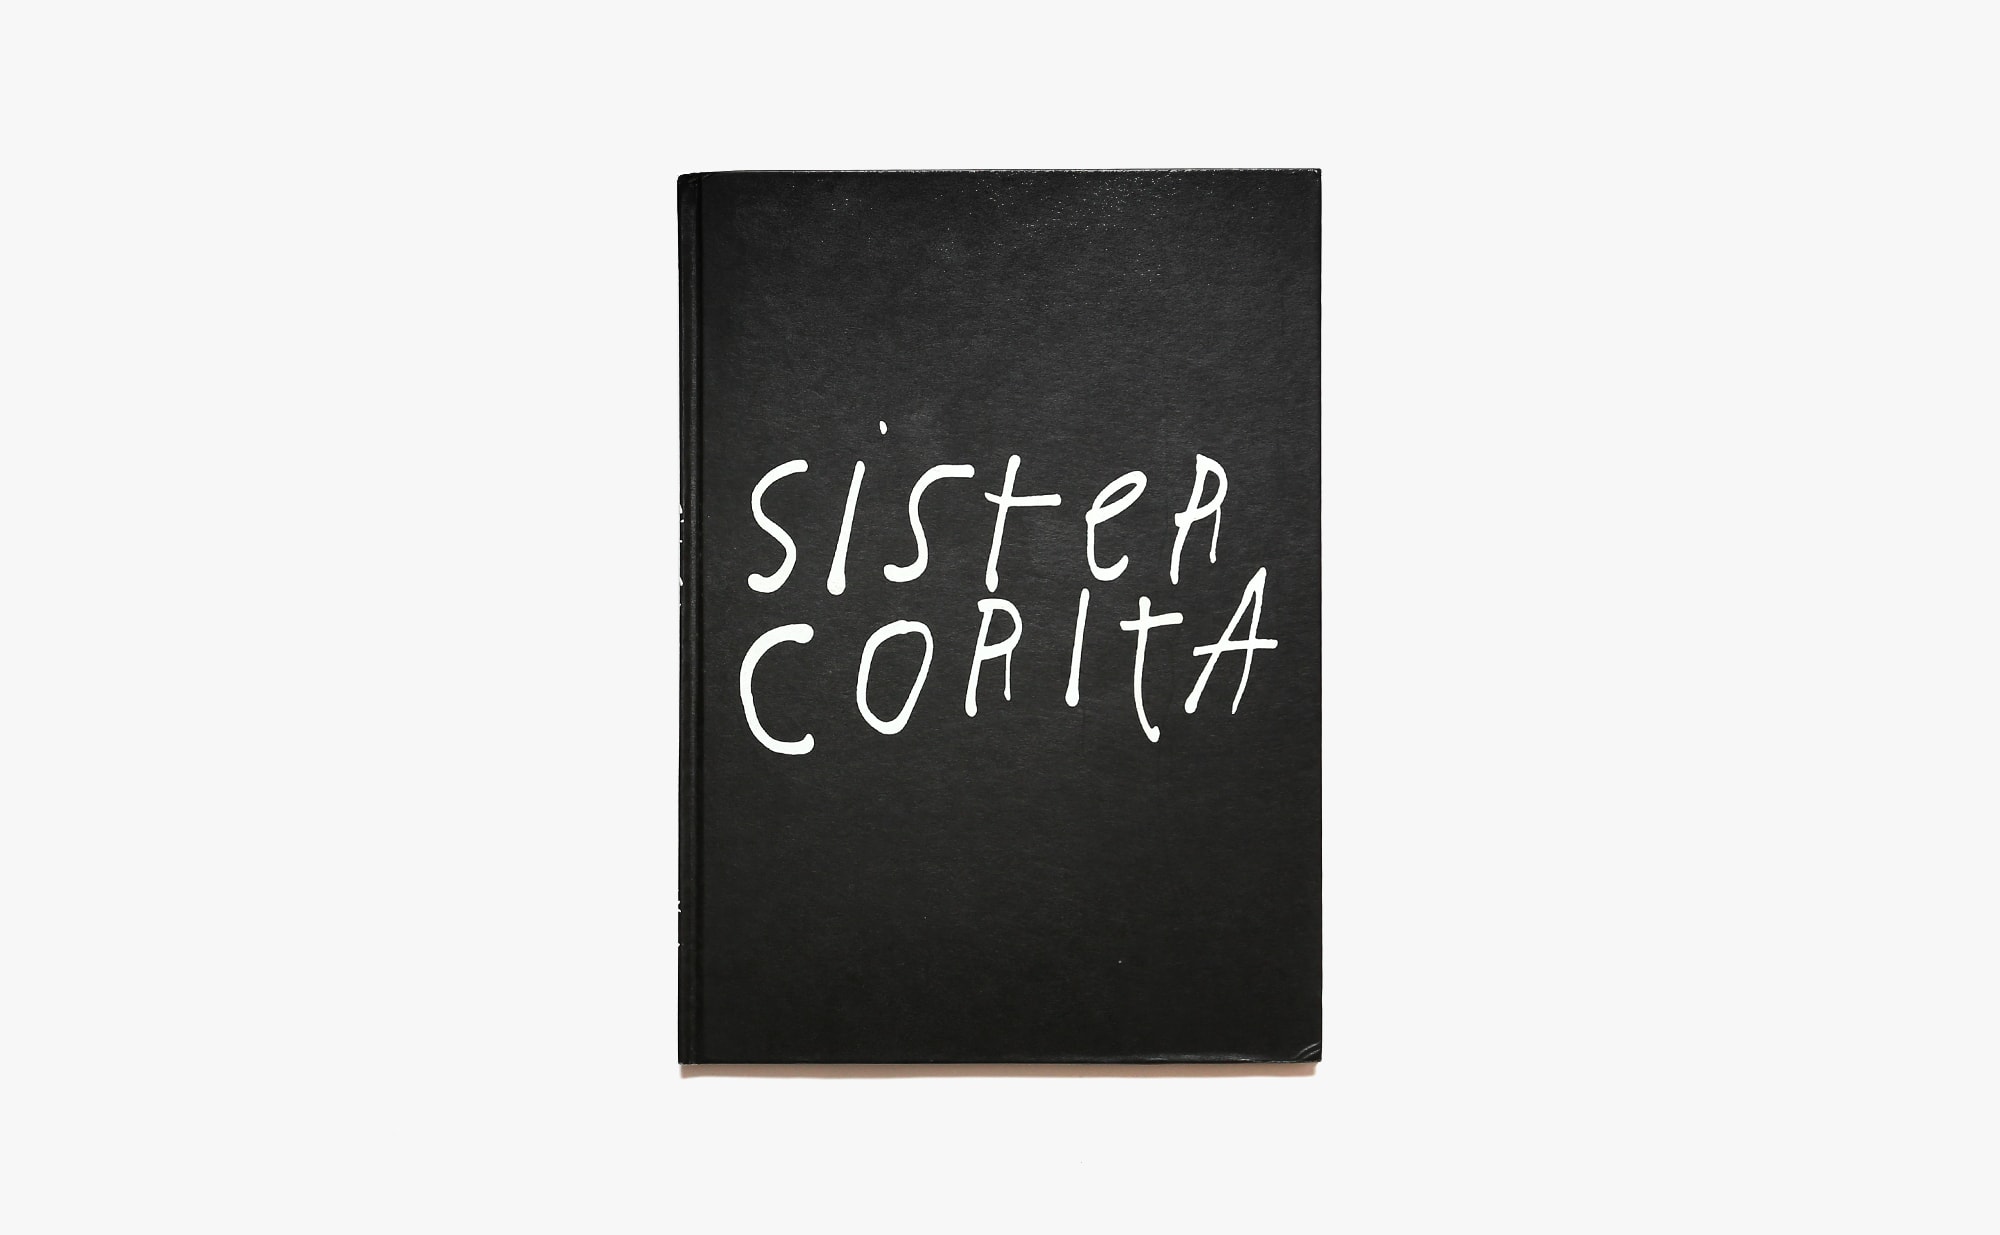 Sister Corita